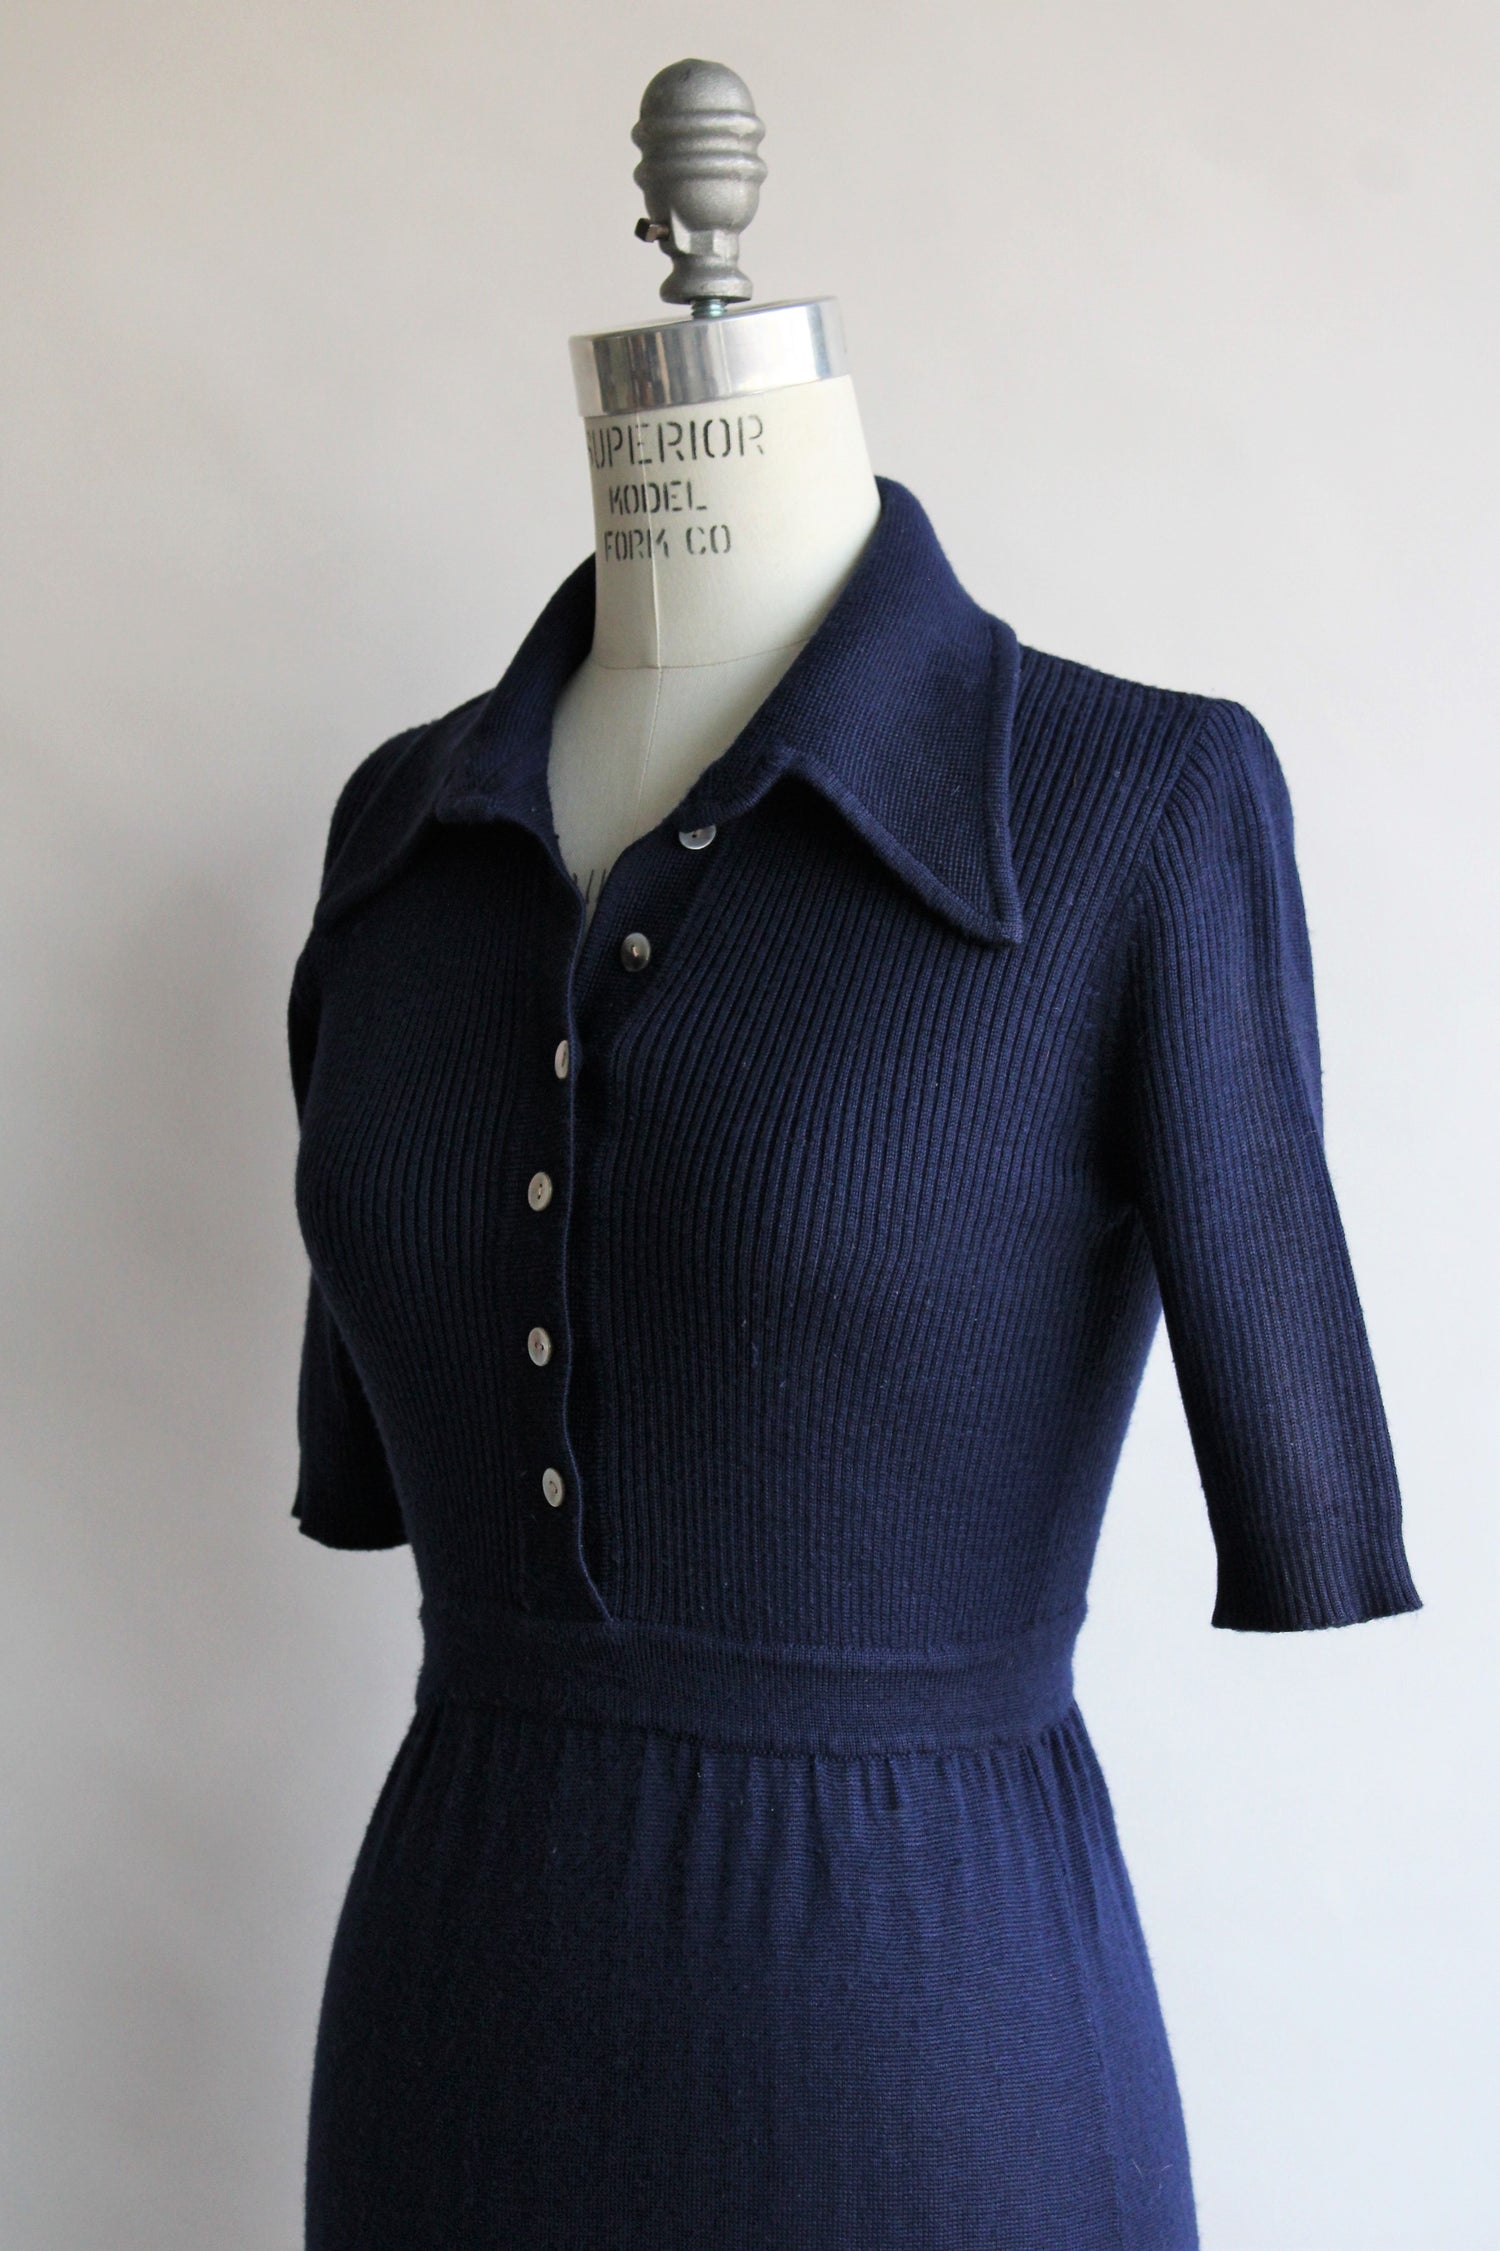 Vintage 1970s Navy Blue Knit Dress